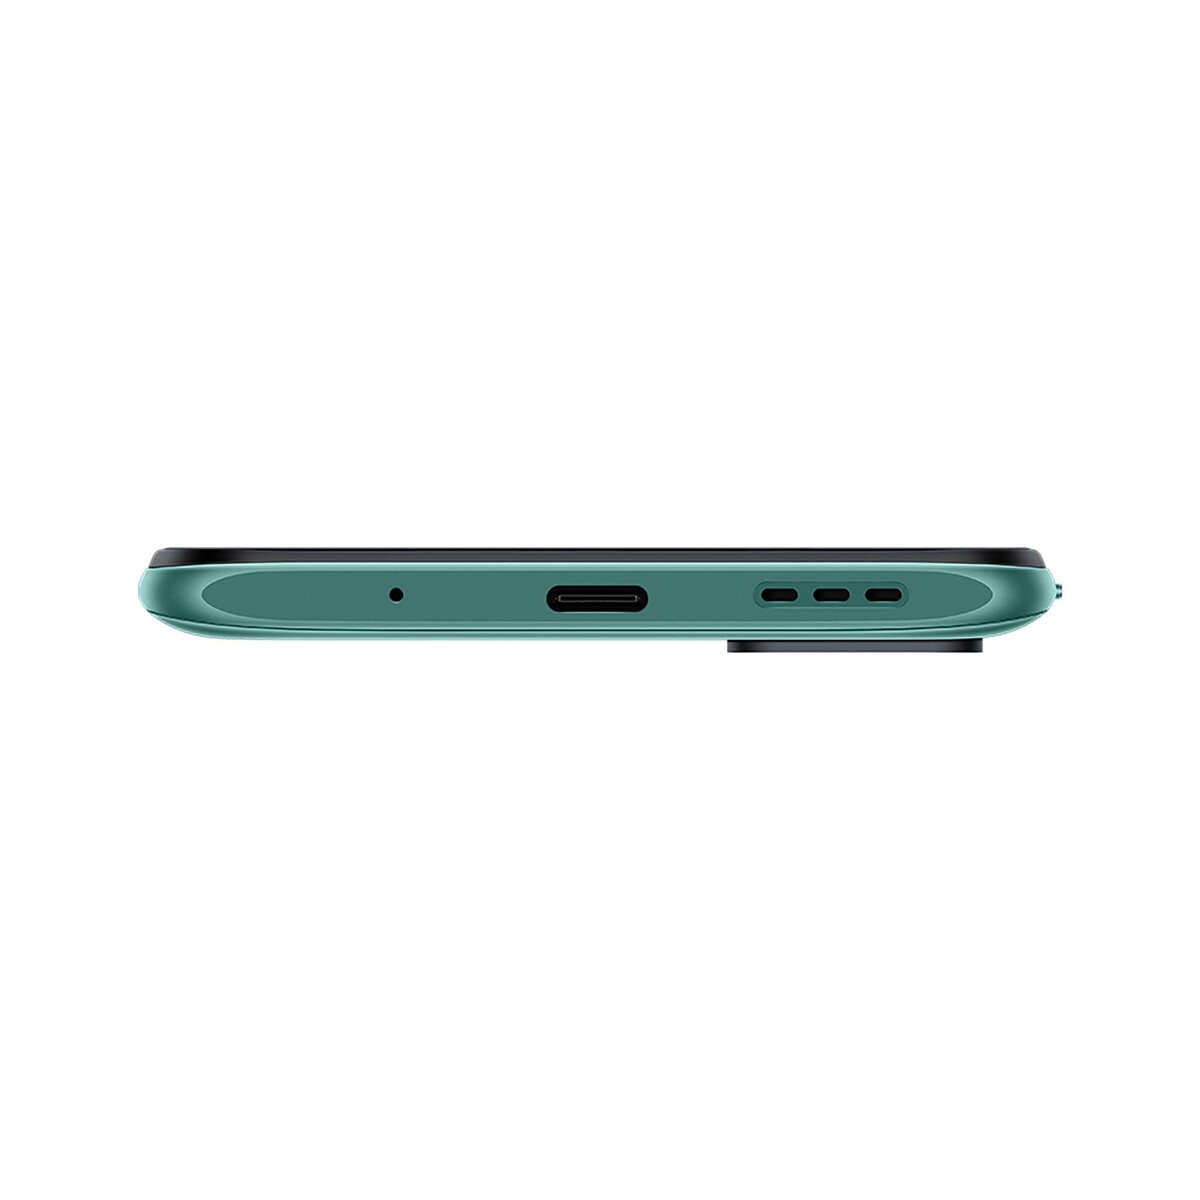 Xiaomi Redmi Note 10 5G Smartphone Dual SIM Aurora Green 4GB RAM 64GB LTE